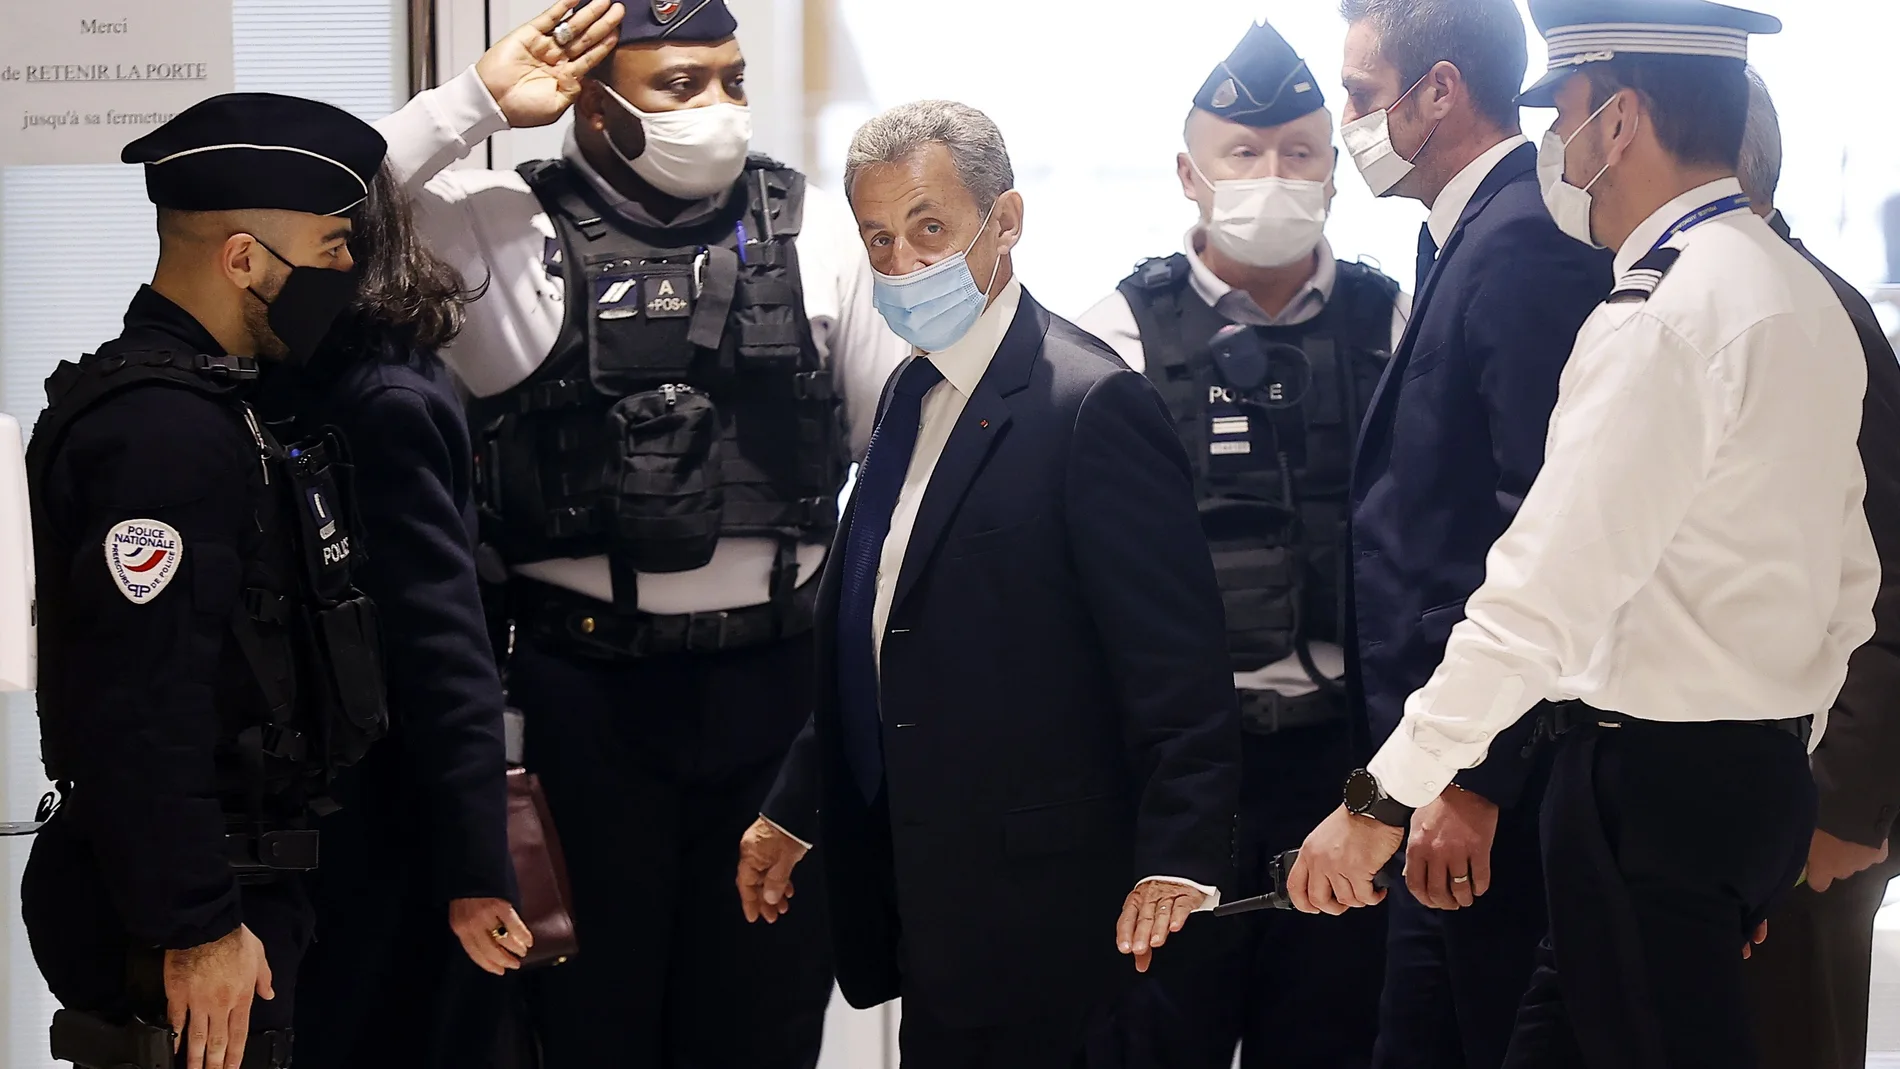 El expresidente francés Nicolas Sarkozy (c) fue condenado este lunes a tres años de prisión por corrupción y tráfico de influencias